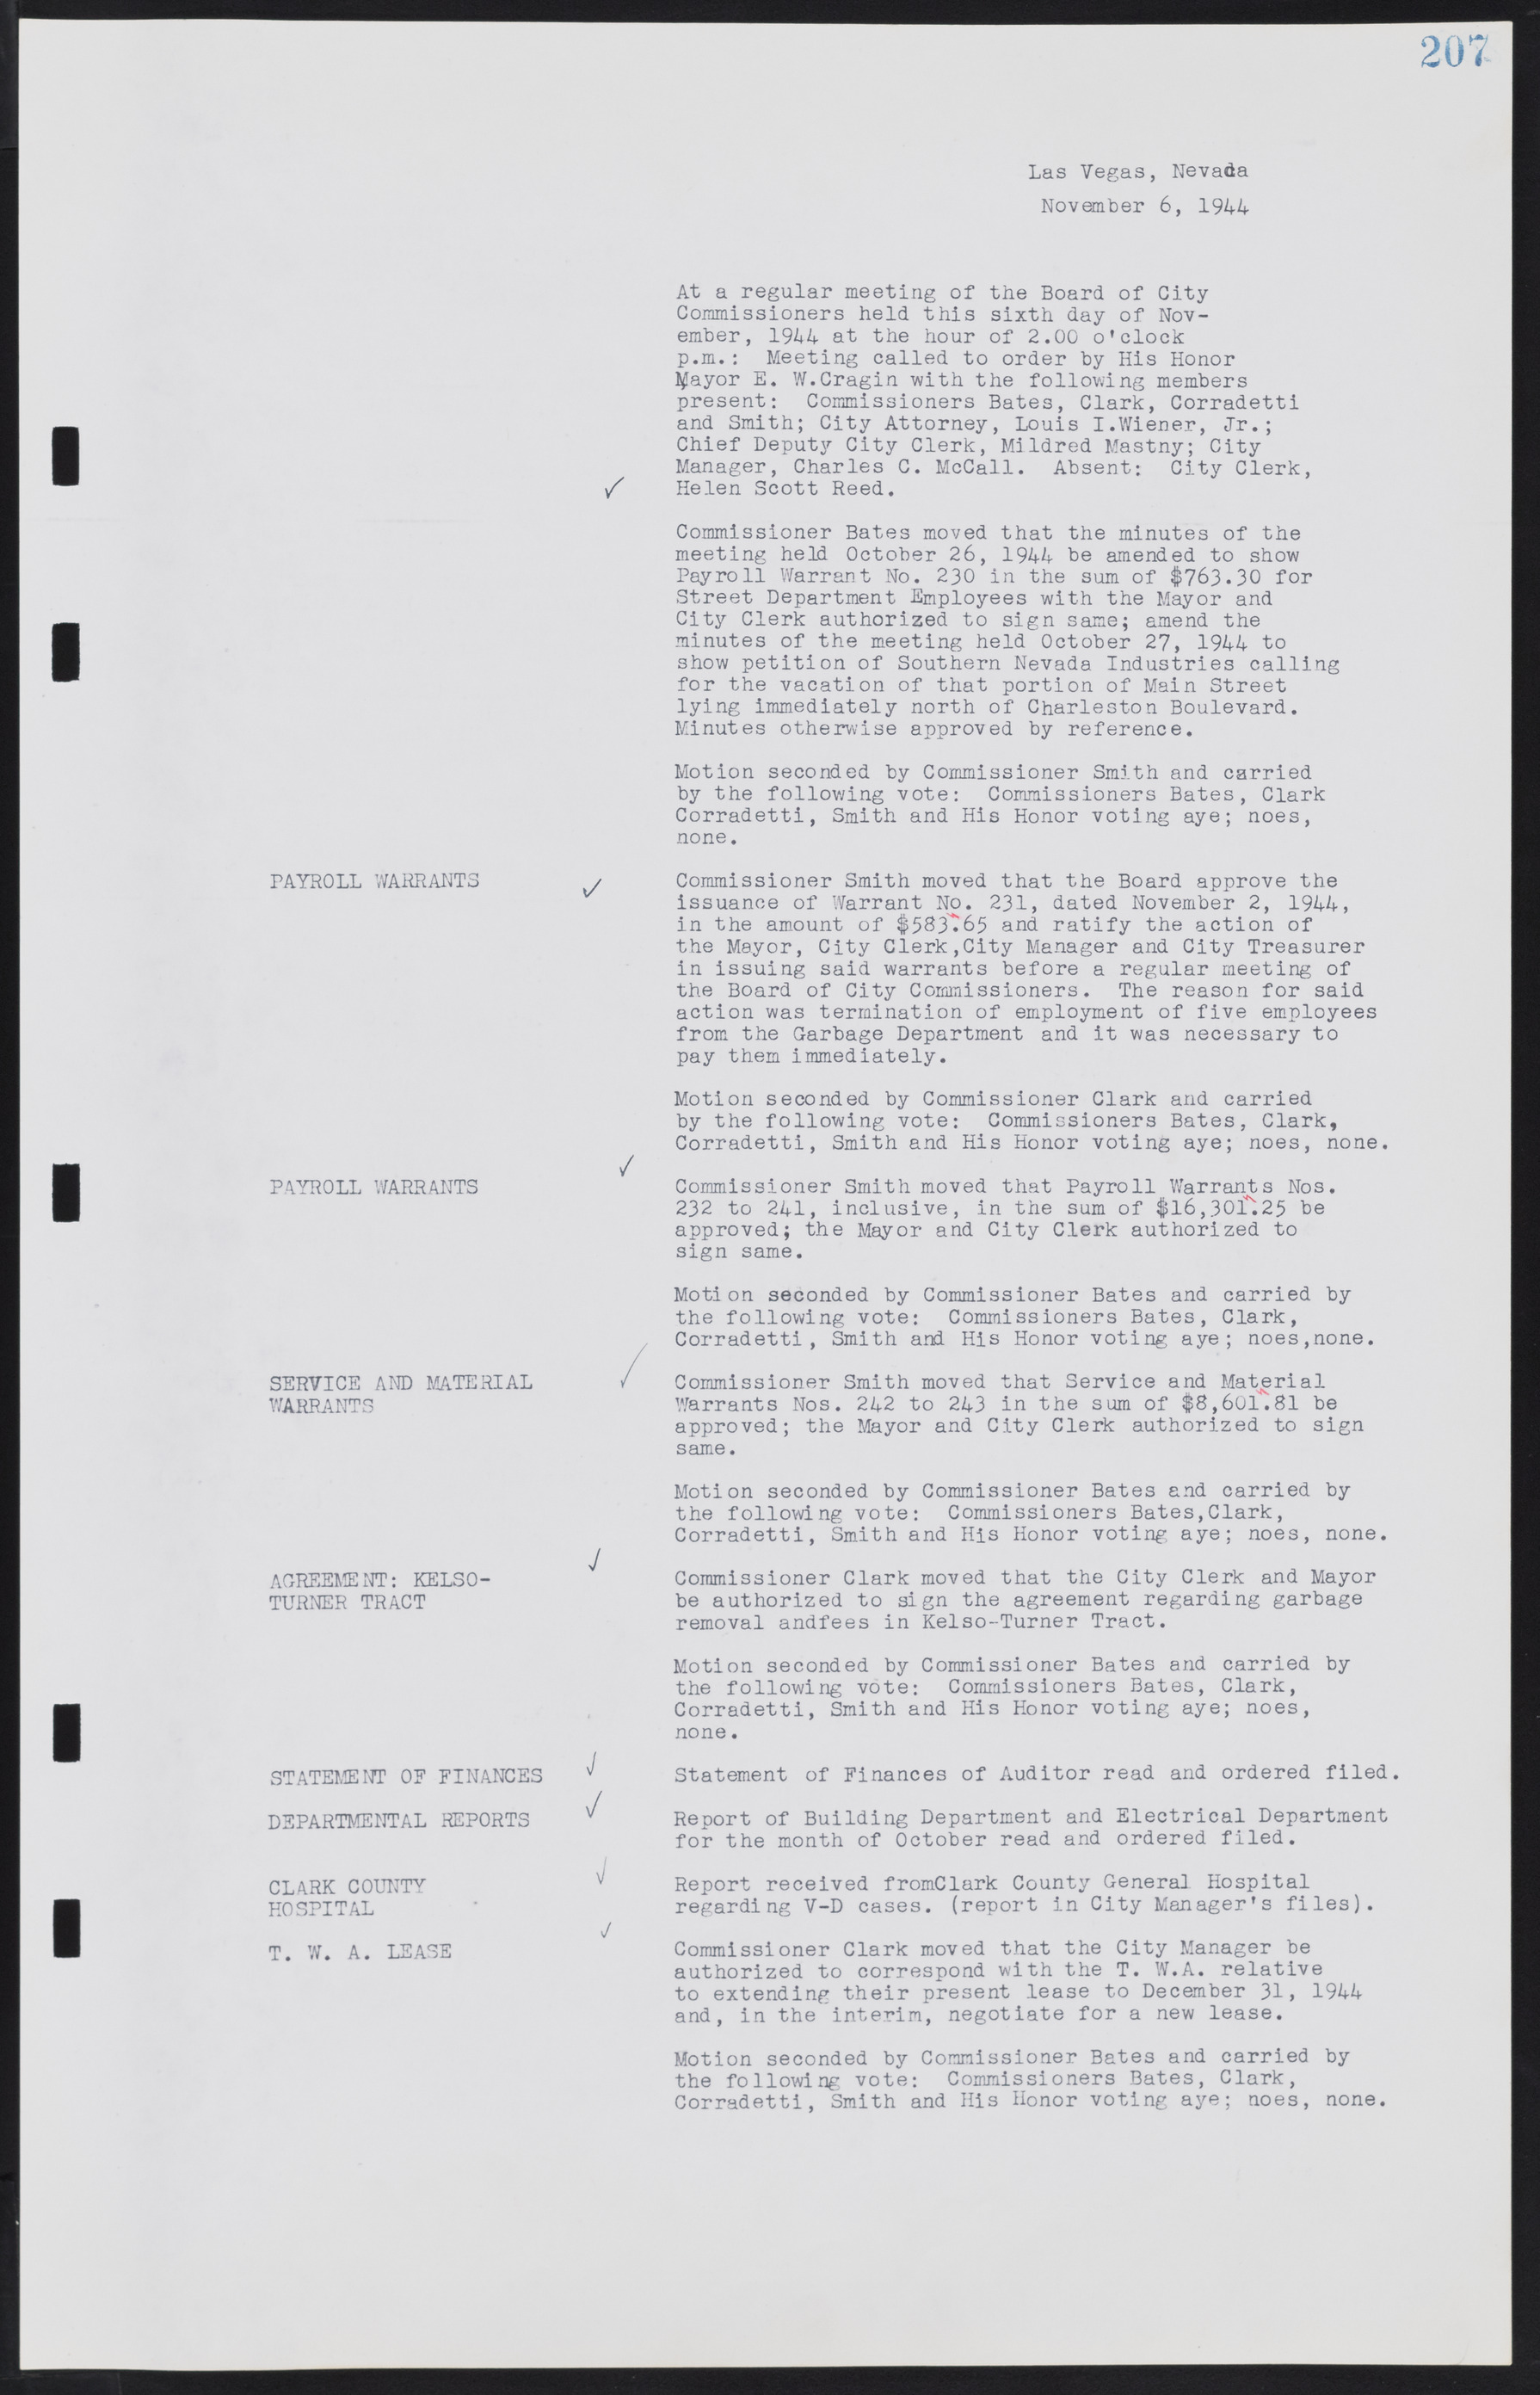 Las Vegas City Commission Minutes, August 11, 1942 to December 30, 1946, lvc000005-226